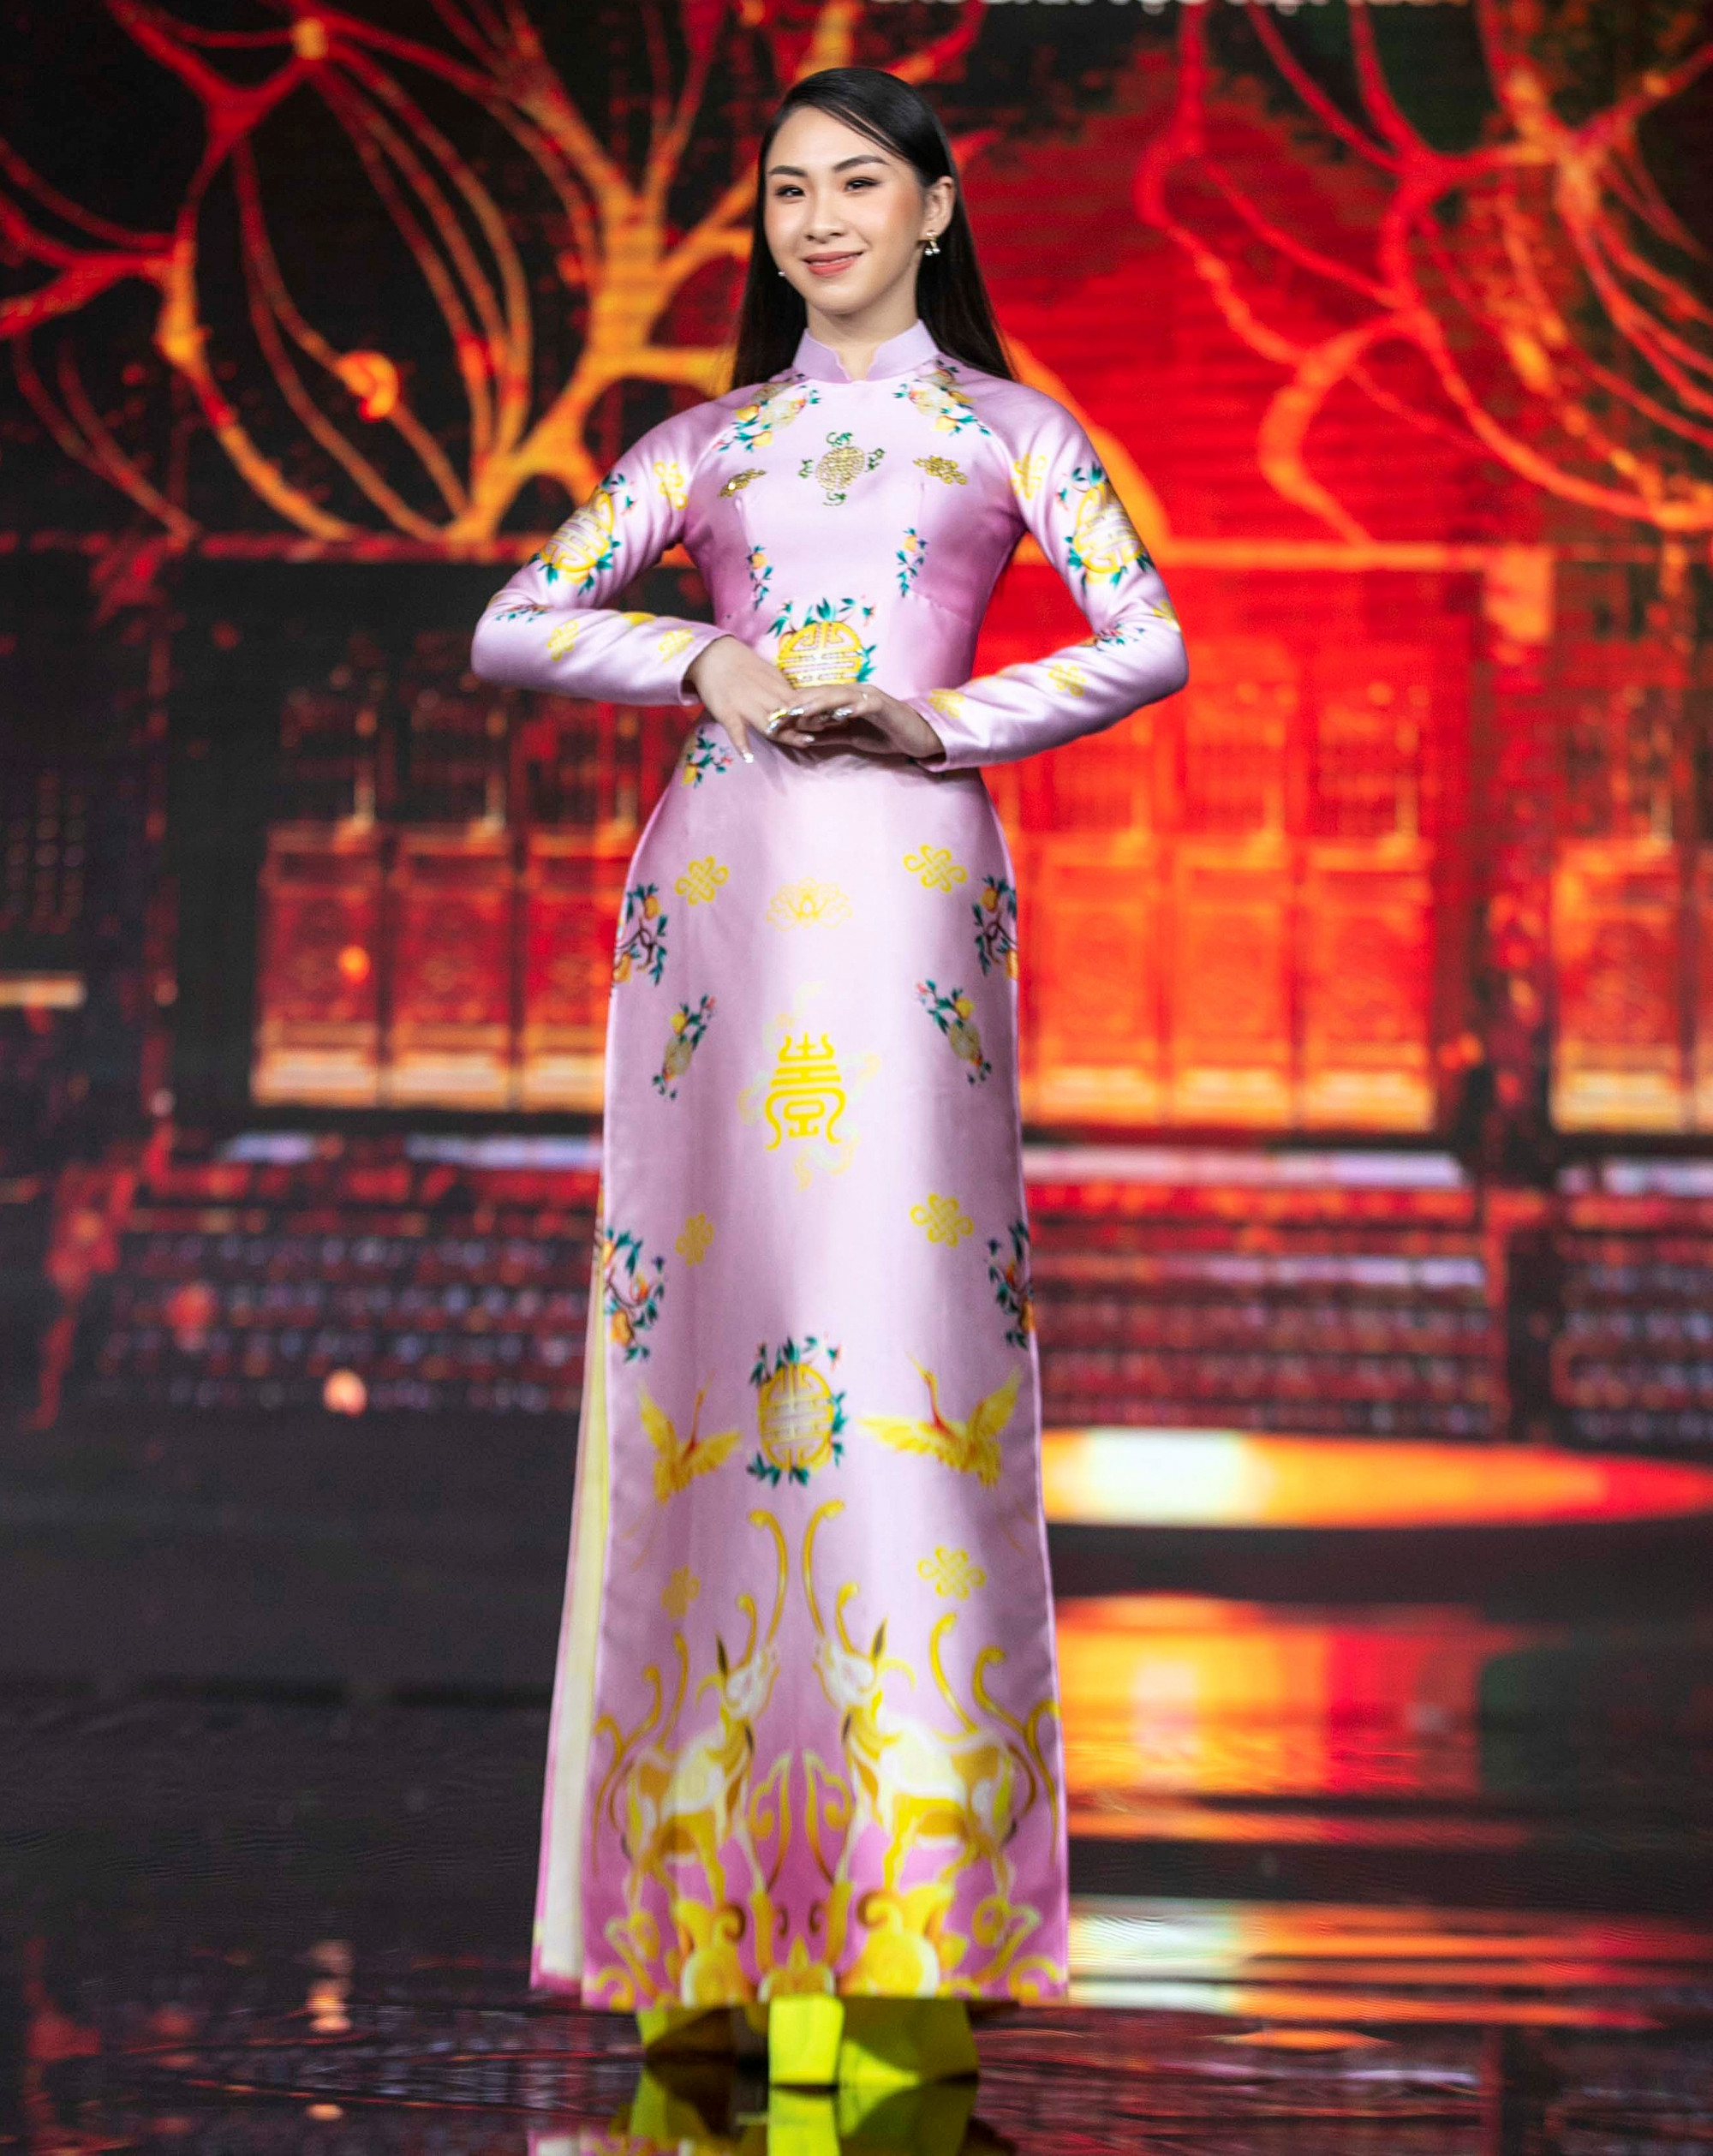 Thủ khoa Học viện Tòa án năm 2021 Đào Phương Quỳnh (dân tộc Tày) được nhớ đến với nhan sắc xinh đẹp và khả năng ứng biến tình huống nhanh nhạy.